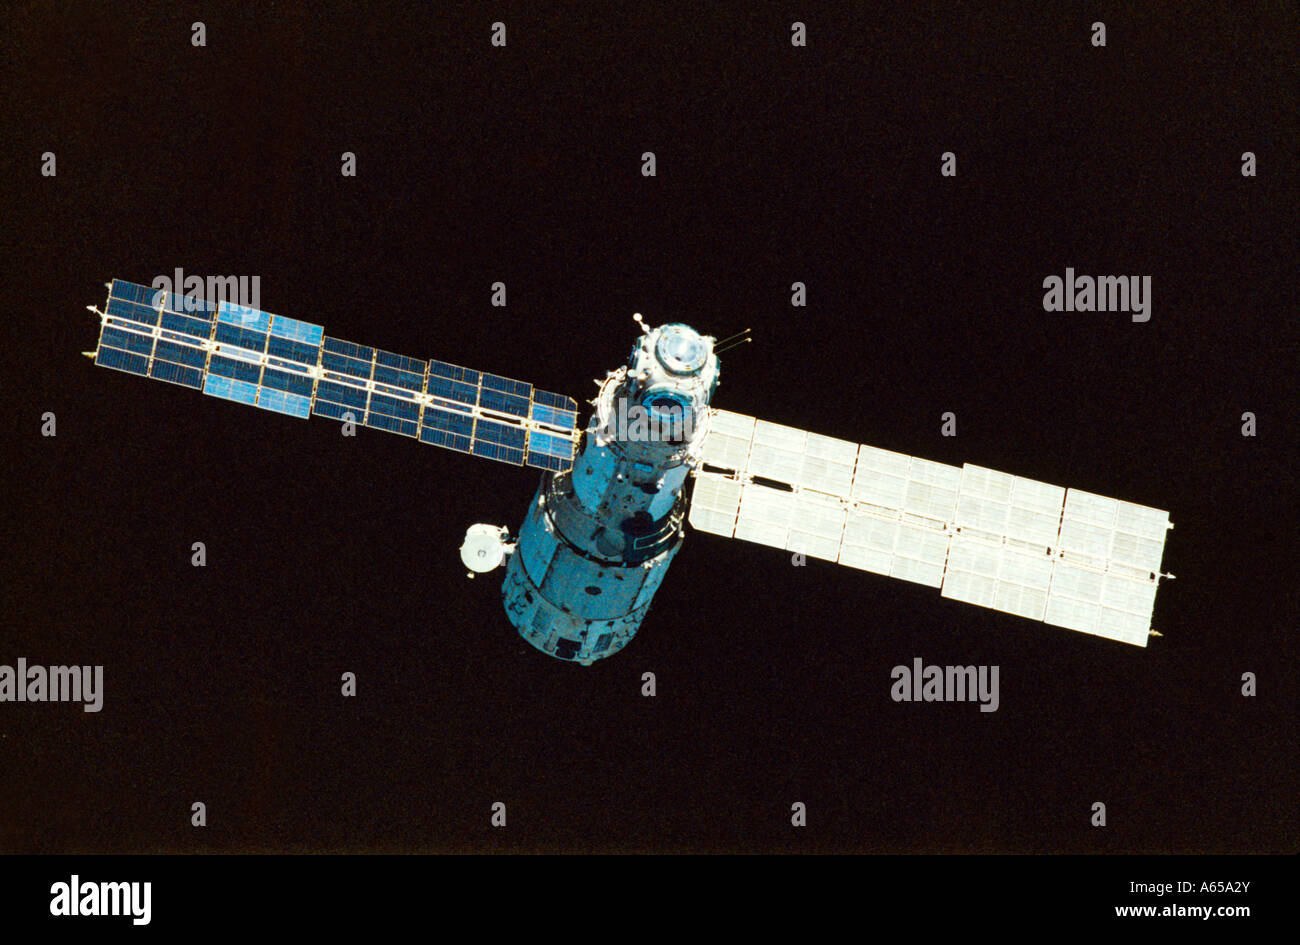 Das Kernmodul (DOS-7) des sowjetisch-russischen mir-Raumstation-Komplexes Low Earth Orbit wurde 1986 in Betrieb genommen und von 1986 bis 2001 verwendet, bevor es dekompiliert wurde Stockfoto